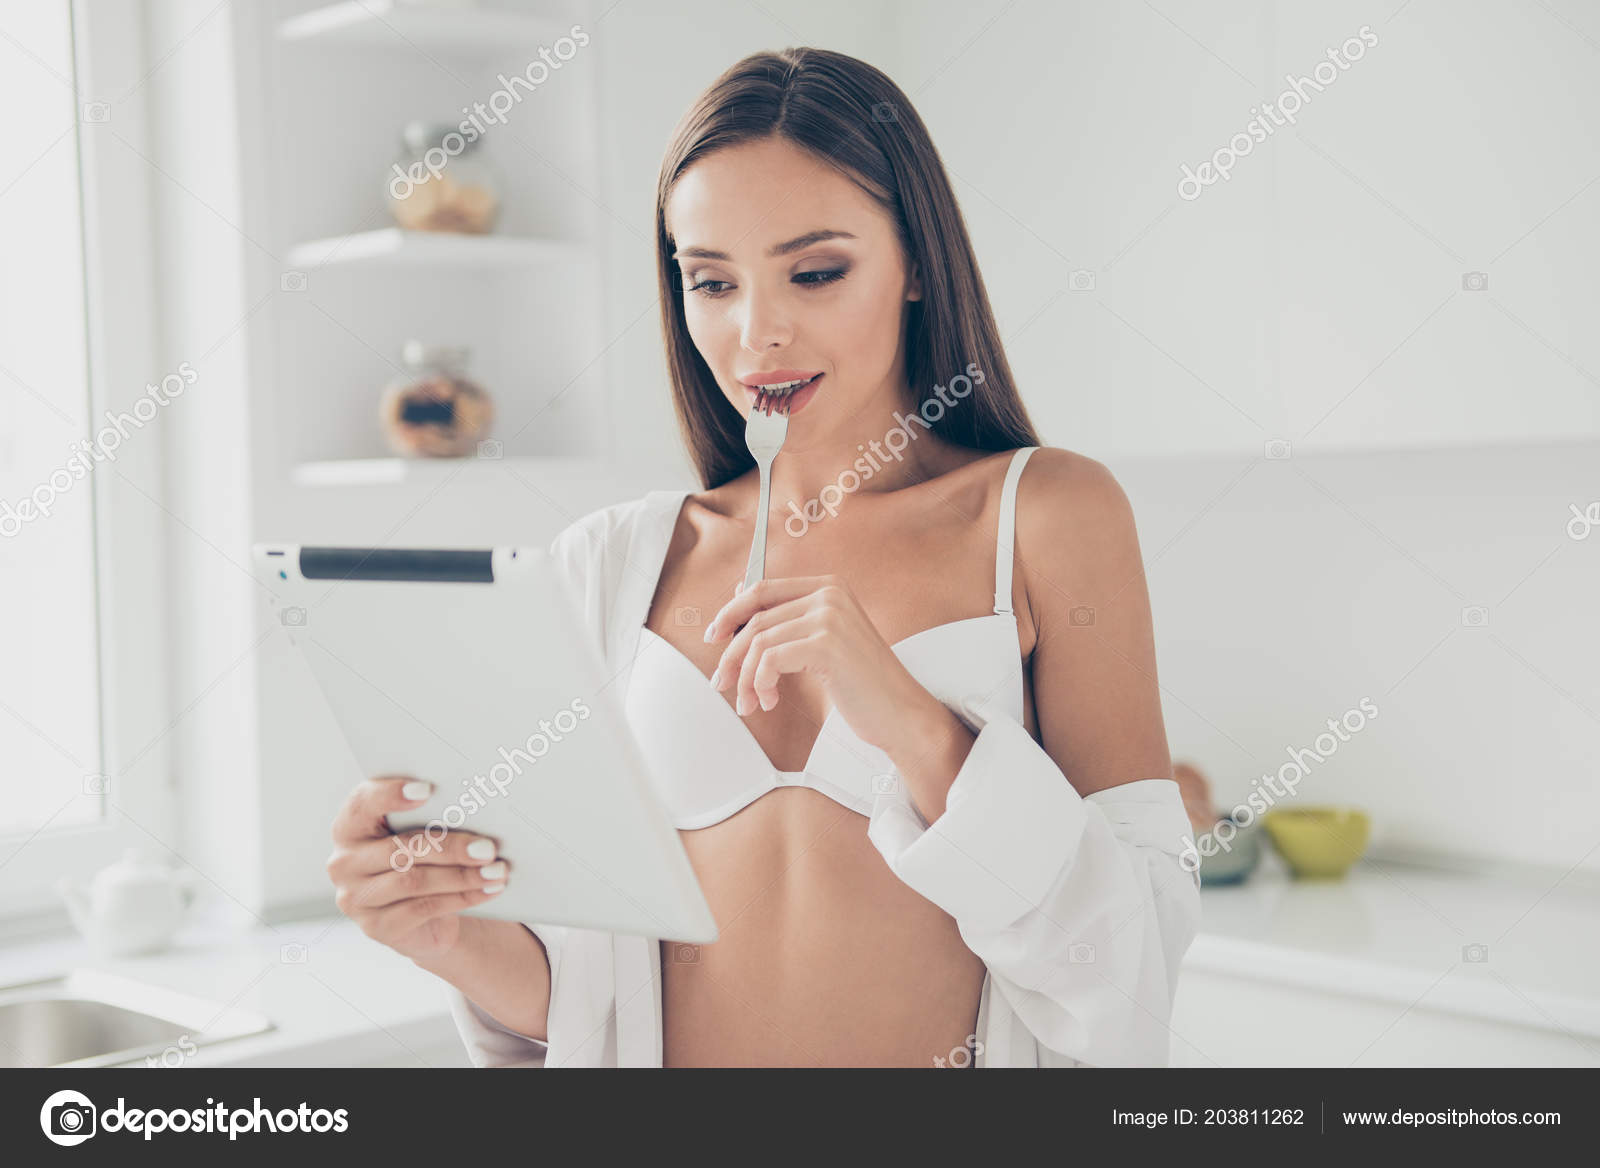 Пока женщина читает кто-то фотографирует ее ведь она специально расстегнула блузку и сняла лифчик 